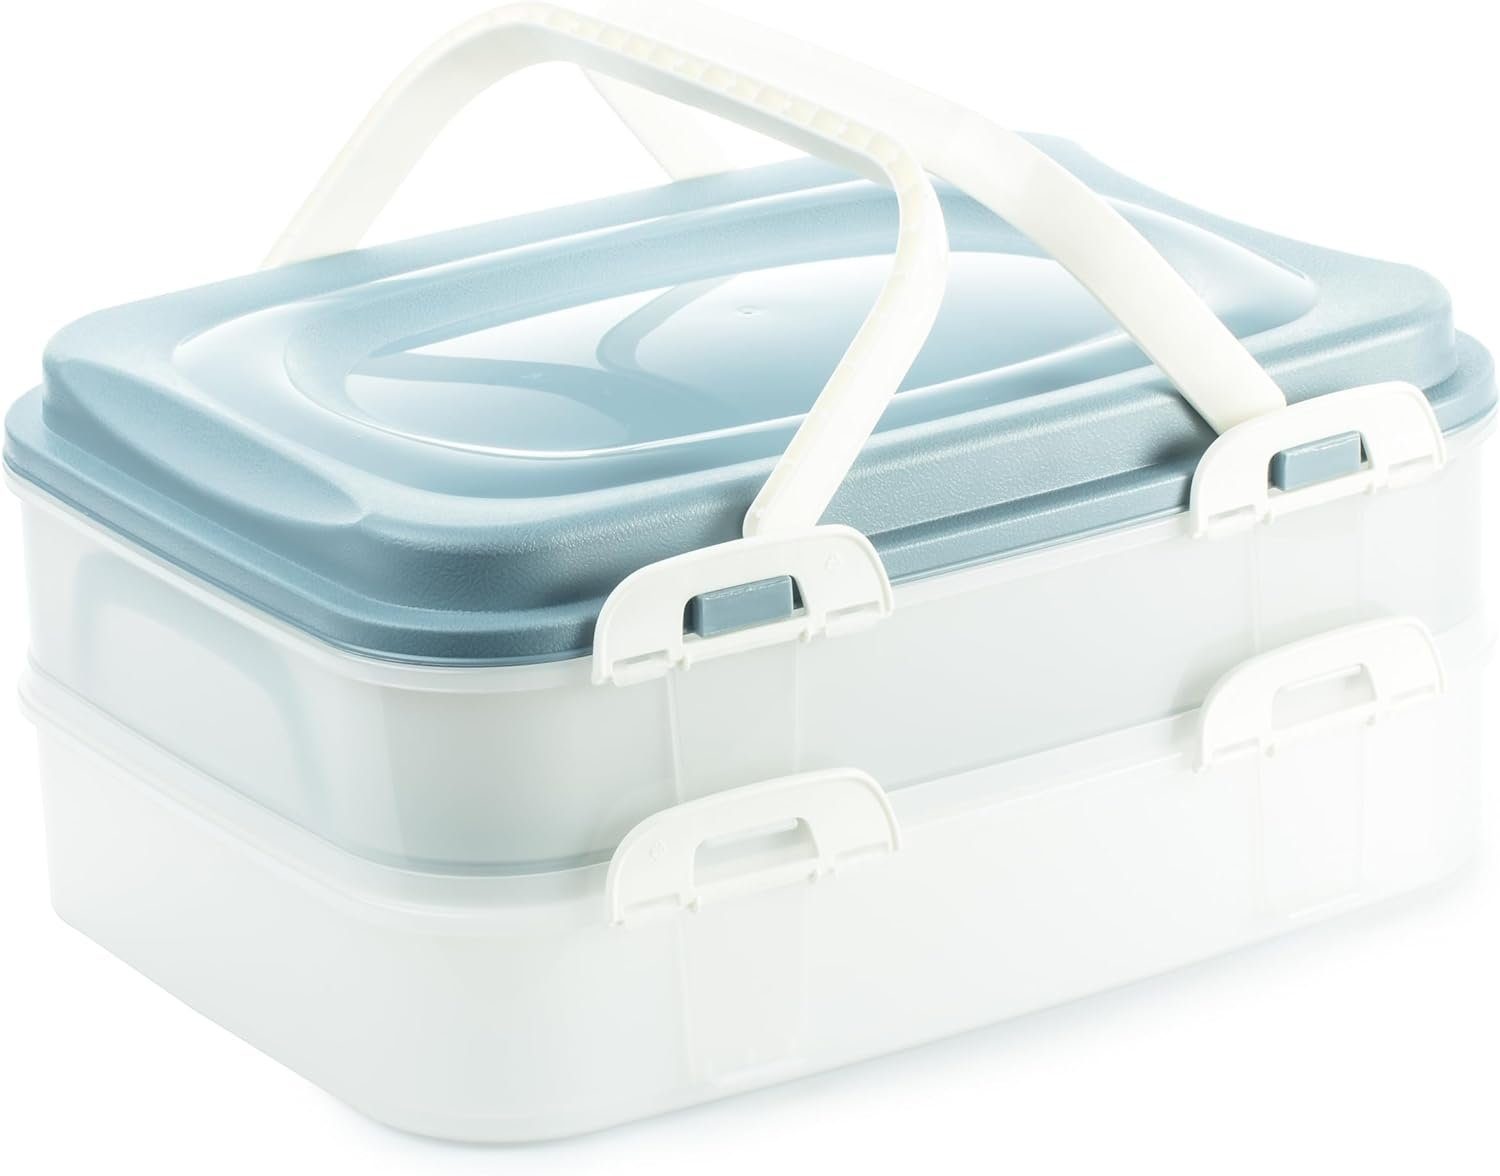 Centi Kuchentransportbox Cupcake/ Muffin Transportbox - Kuchenbehälter, 2 Etagen, Kunststoff, (40x30x18cm blau), Rechteckig Partycontainer mit Hebeeinsatz + Deckel mit Tragegriffen